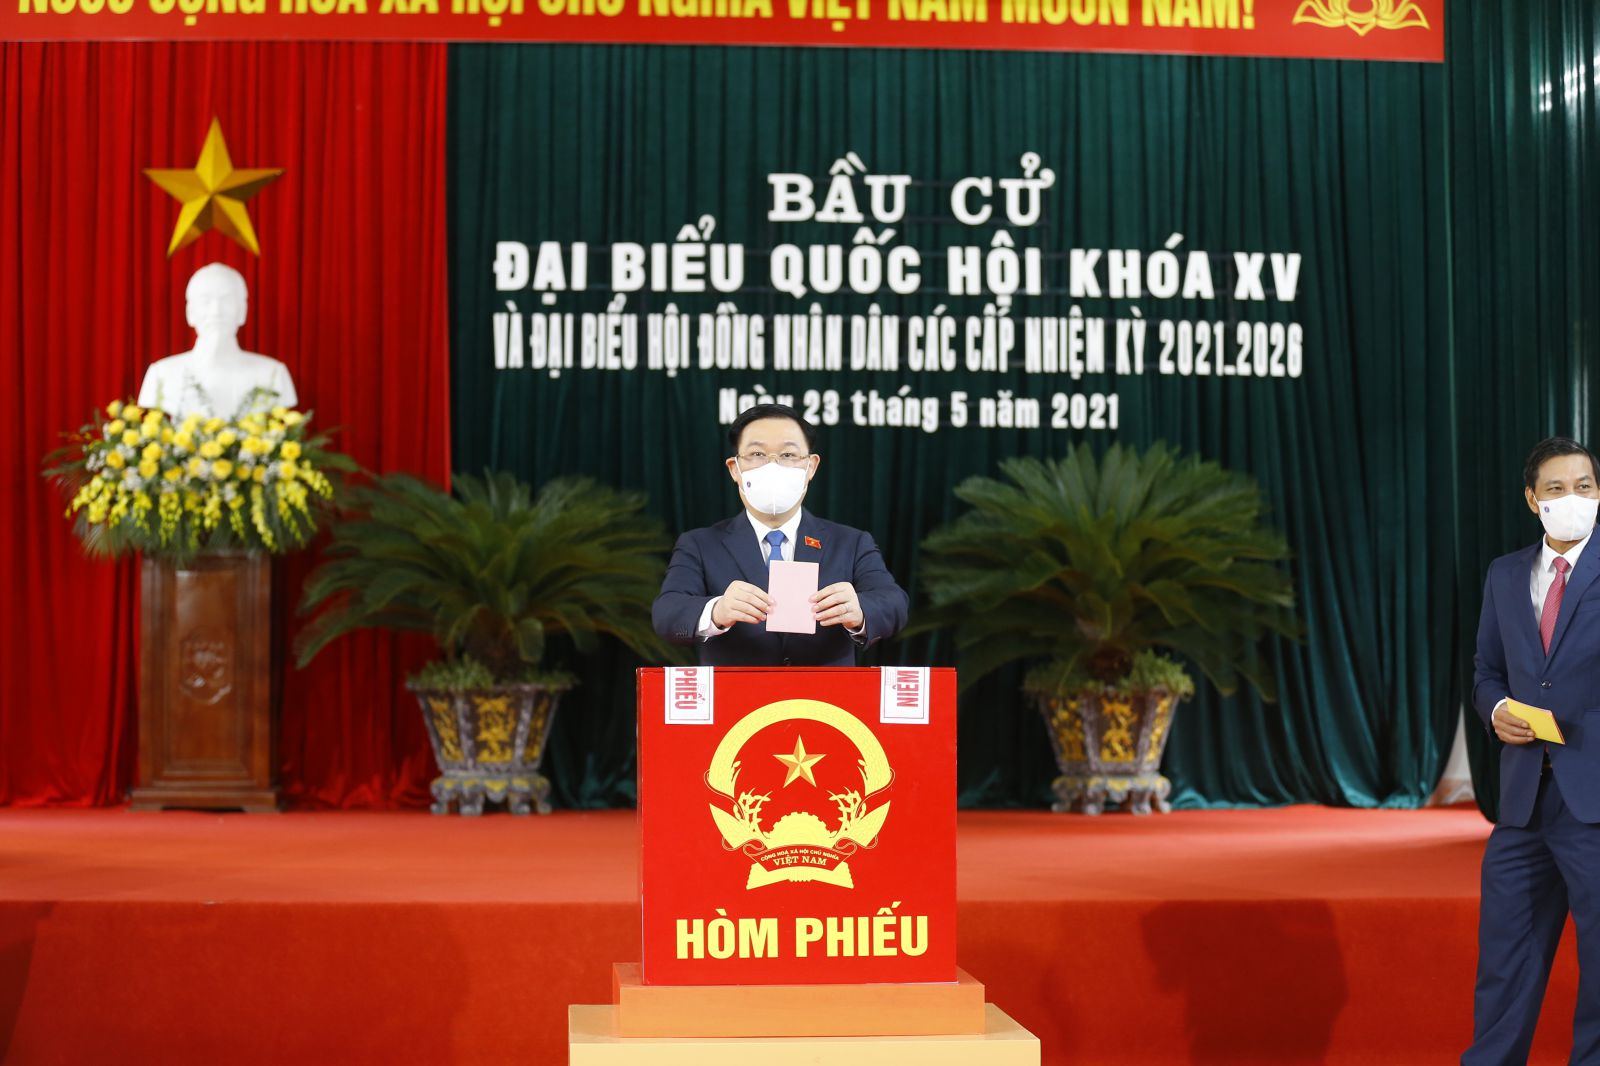 Chủ tịch Quốc hội Vương Đình Huệ bỏ phiếu tại thành phố Hải Phòng.